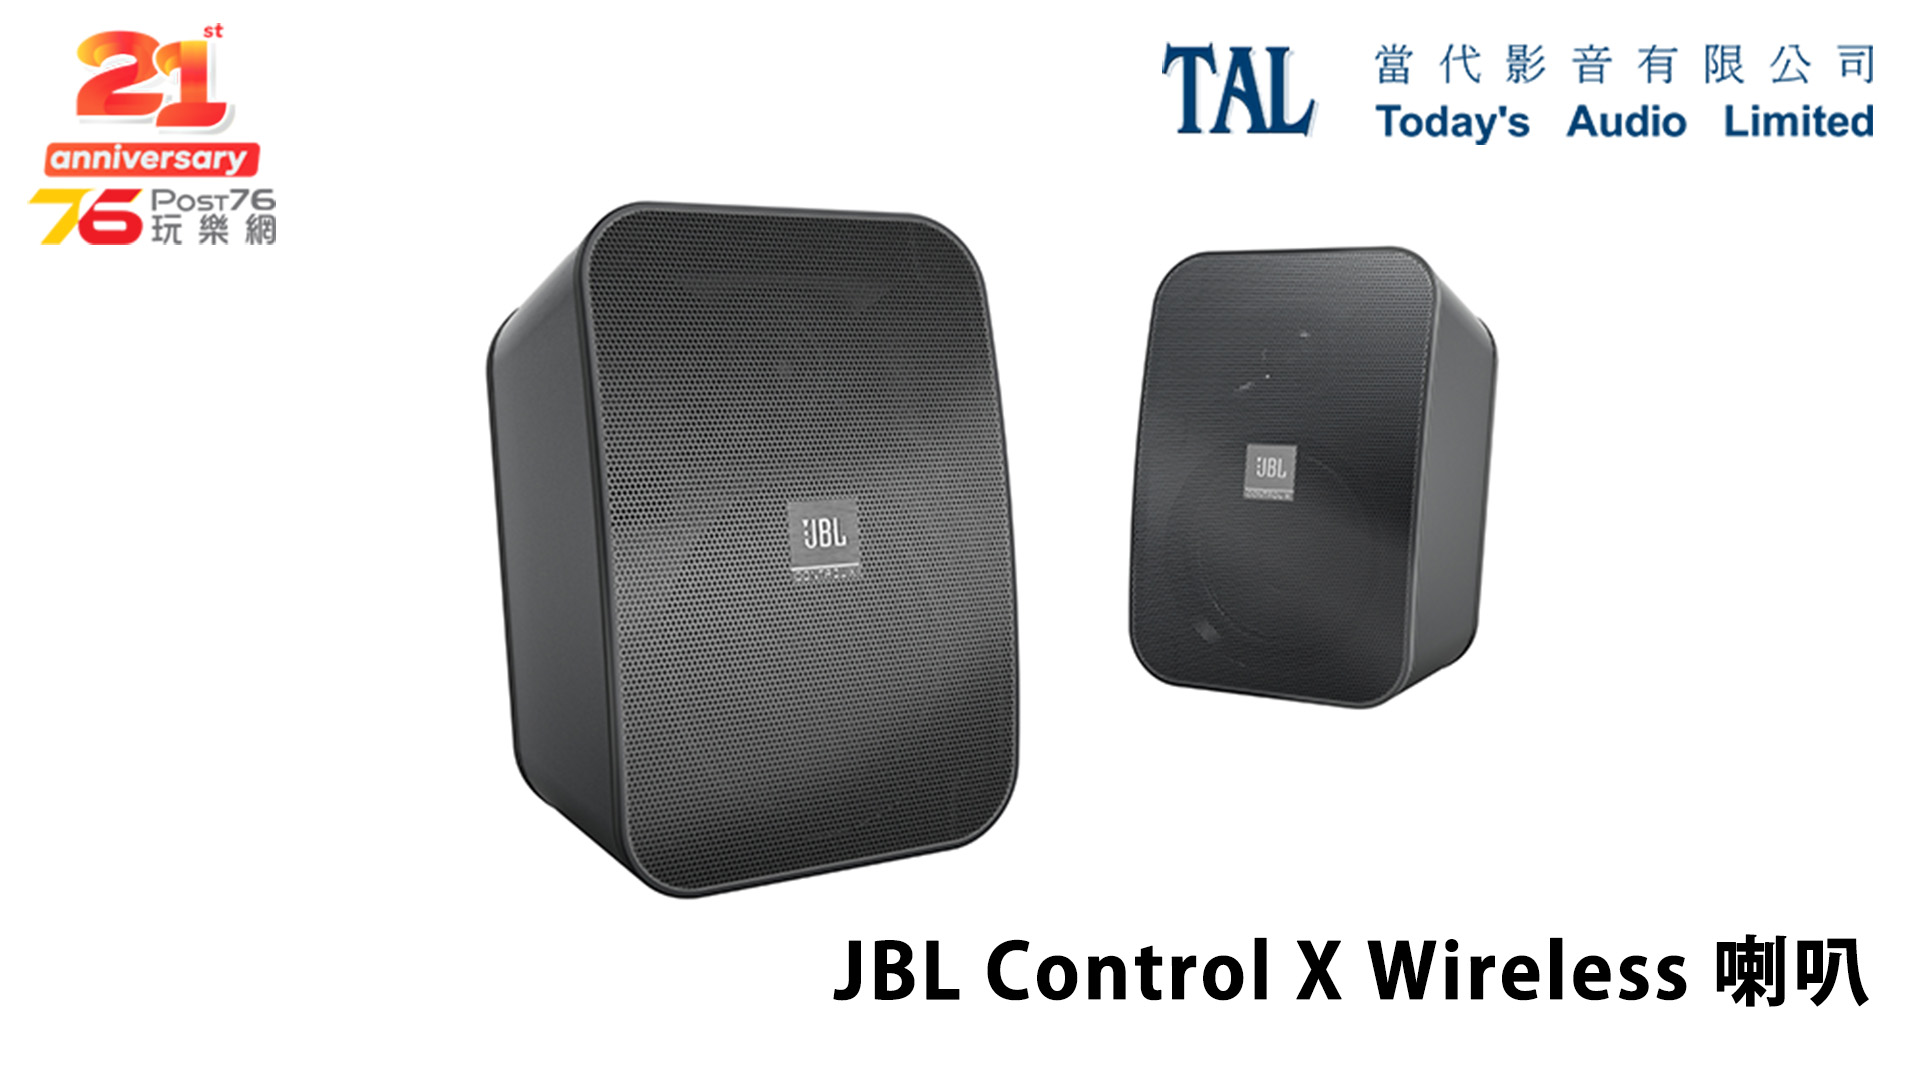 Post76 21 Sponosr Pic (TAL) JBL Control X Wireless.jpg